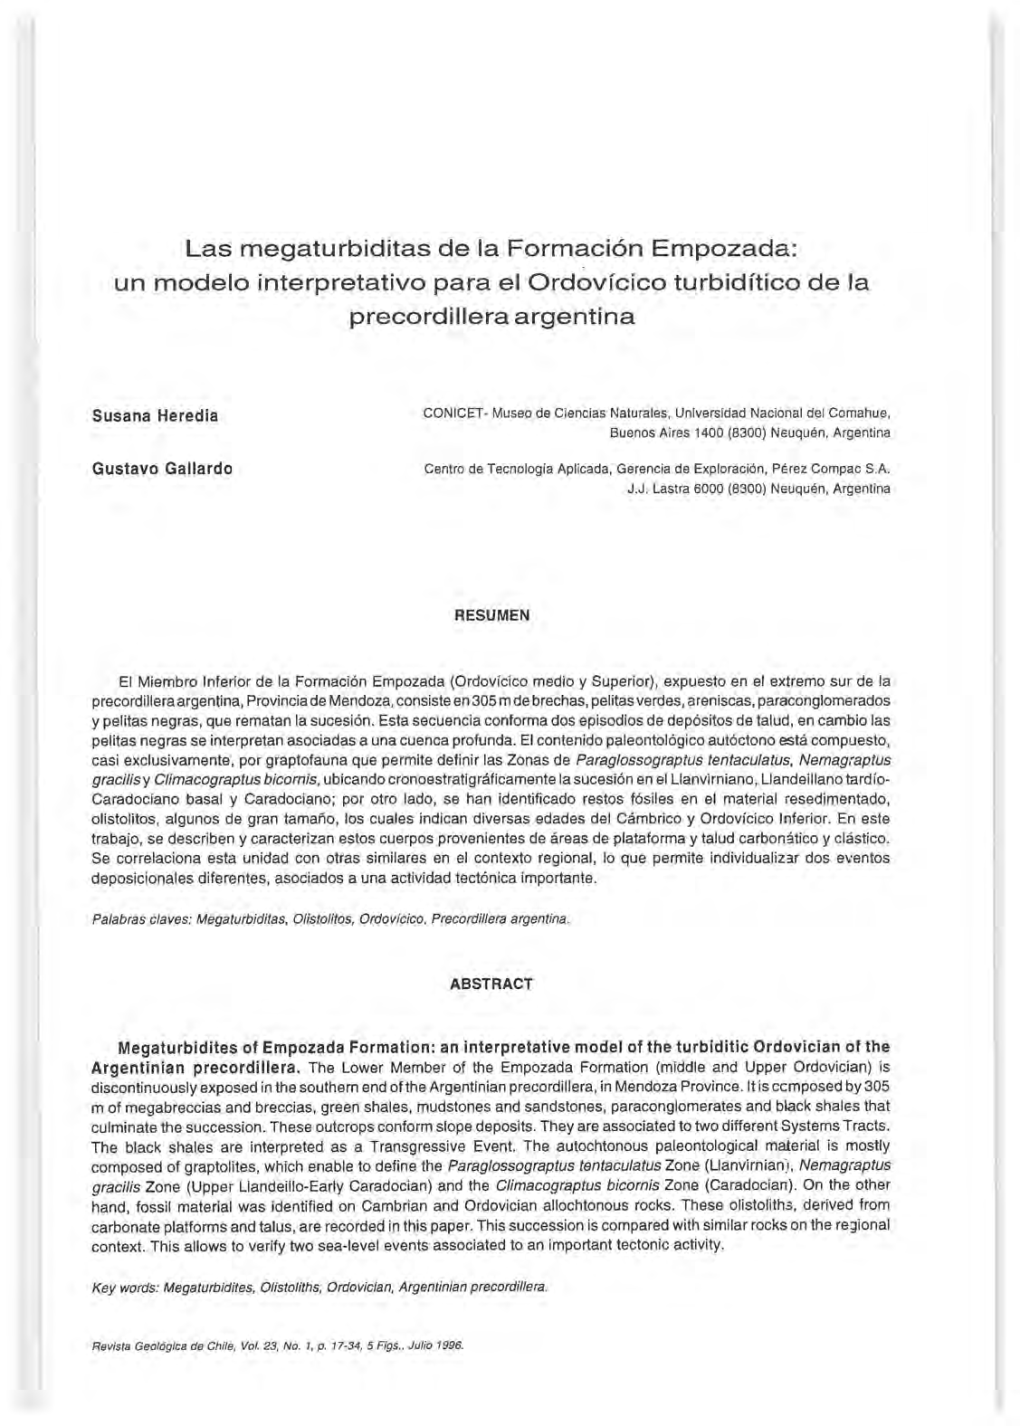 Las Megaturbiditas De La Formación Empozada: Un Modelo Interpretativo Para El Ordovícico Turbidítico De La Precordillera Argentina